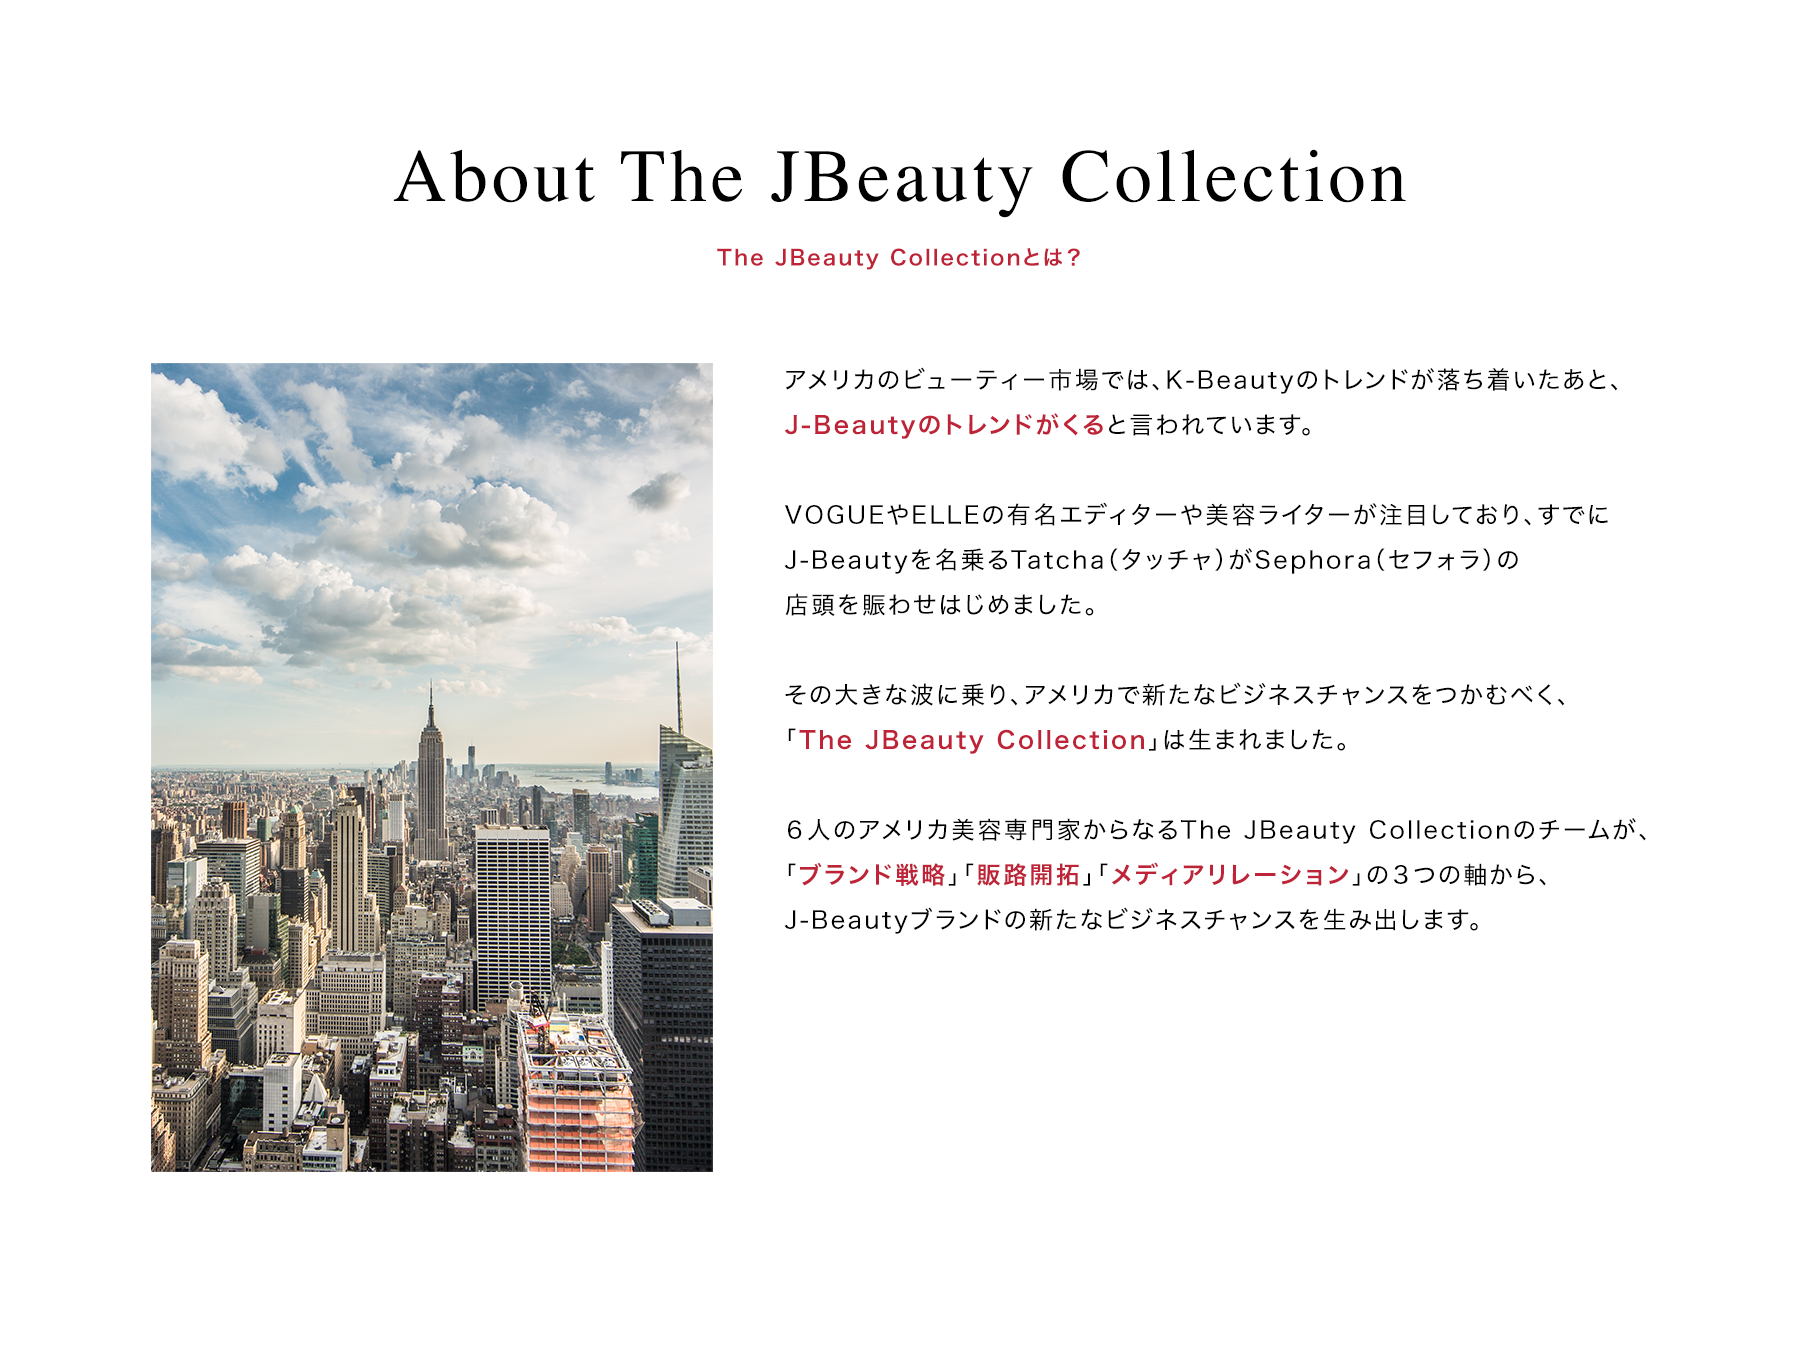 About The JBeauty Collection | The JBeauty Collectionとは？ | アメリカのビューティー市場では、K-Beautyのトレンドが落ち着いたあと、J-Beautyのトレンドがくると言われています。VOGUEやELLEの有名エディターや美容ライターが注目しており、すでにJ-Beautyを名乗るTatcha（タッチャ）がSephora（セフォラ）の店頭を賑わせはじめました。その大きな波に乗り、アメリカで新たなビジネスチャンスをつかむべく、「The JBeauty Collection」は生まれました。６人のアメリカ美容専門家からなるThe JBeauty Collectionのチームが、「ブランド戦略」「販路开拓」「メディアリレーション」の３つの軸から、J-Beautyブランドの新たなビジネスチャンスを生み出します。